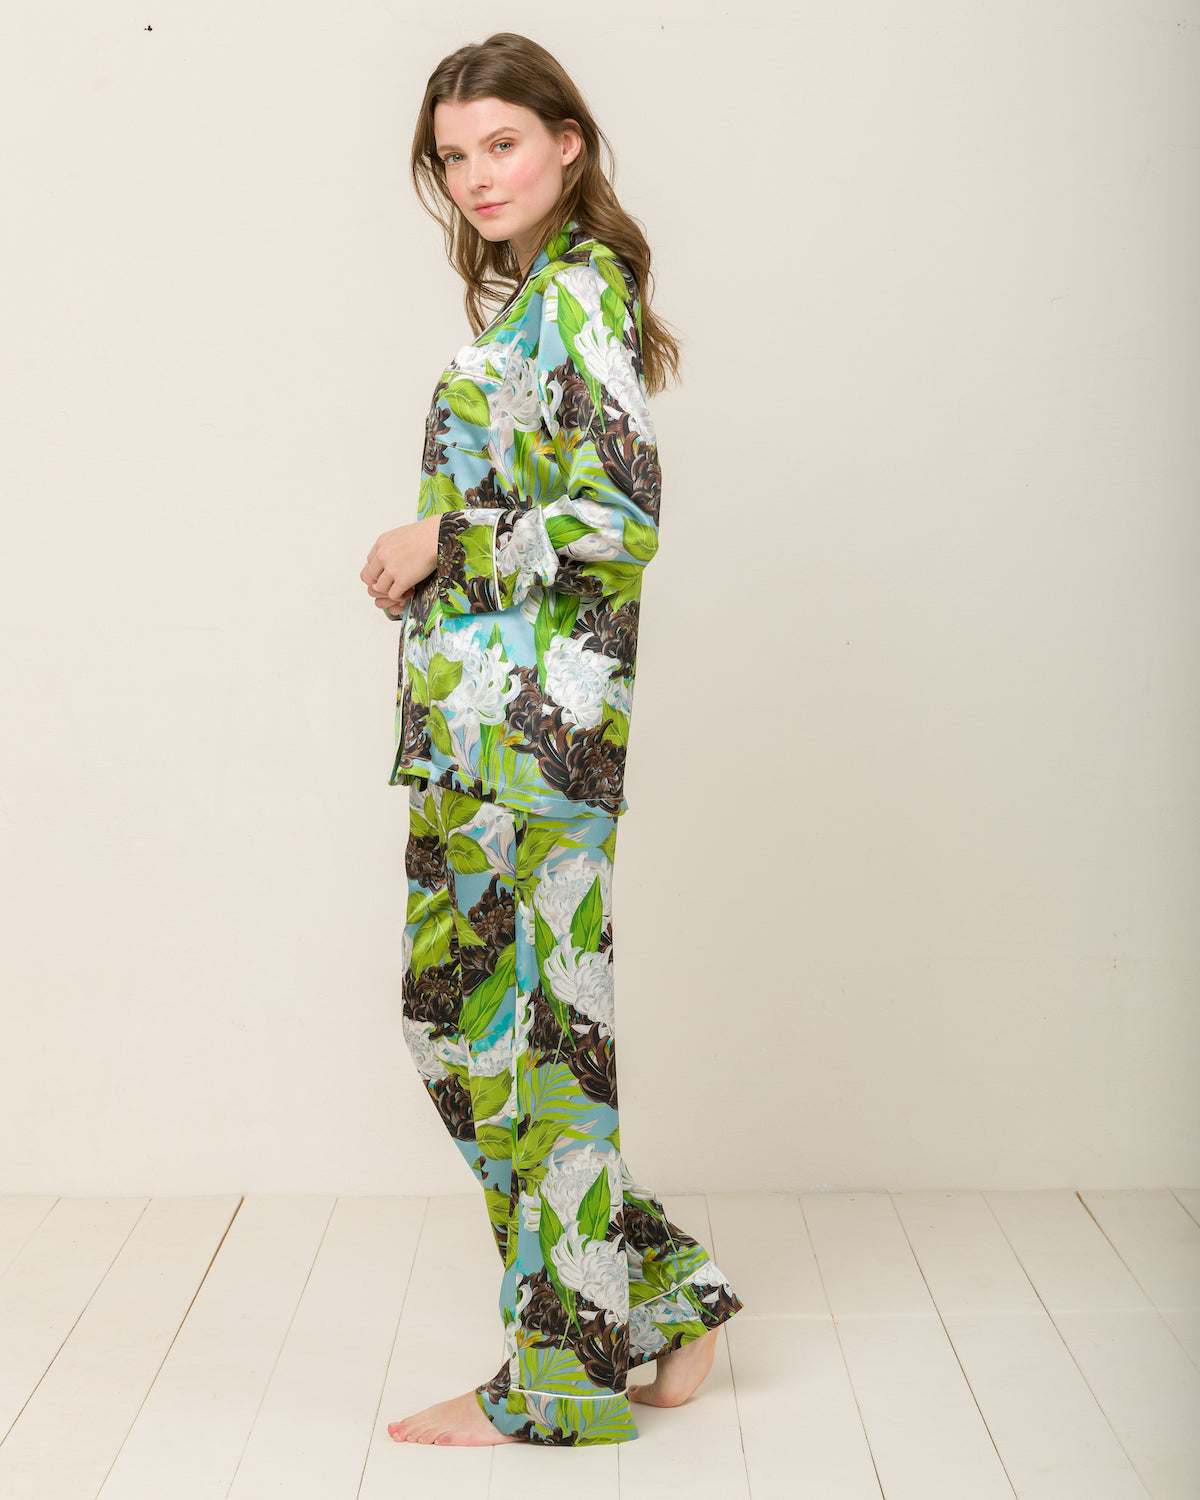 Elisabetha in Verona Garden - Top Loungewear, Pyjama, Seidenpyjama, Schlafanzug | RADICE